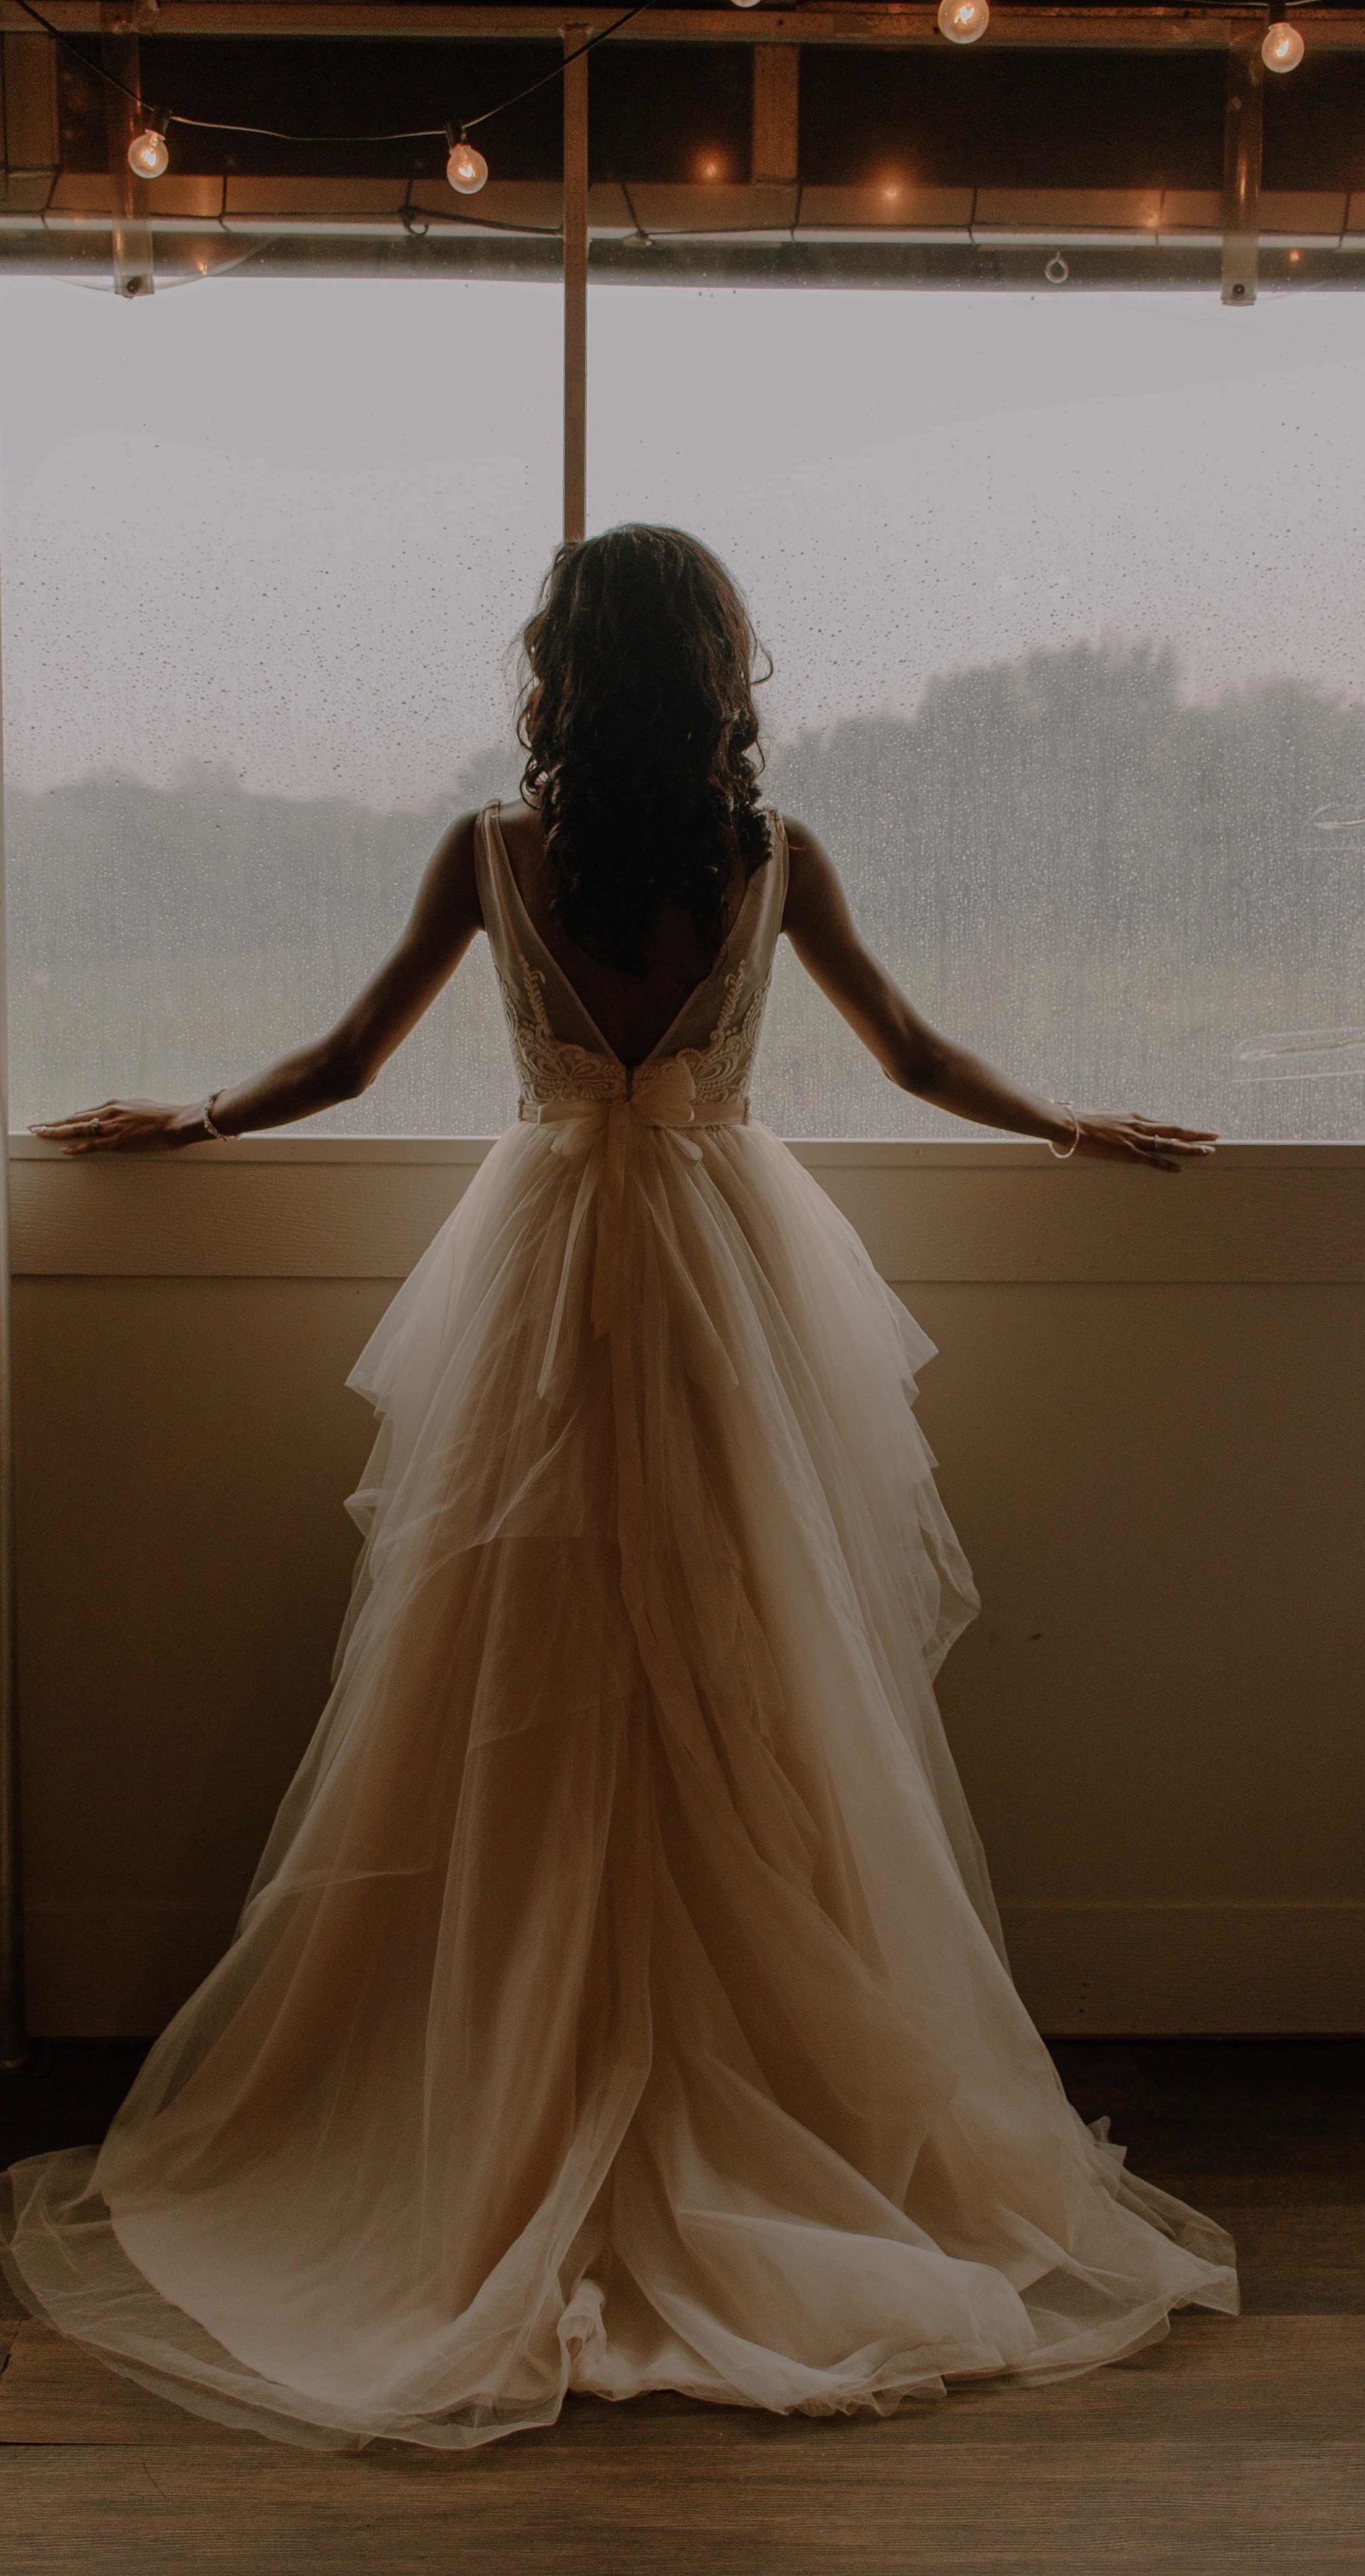 Back shot of bride in wedding dress